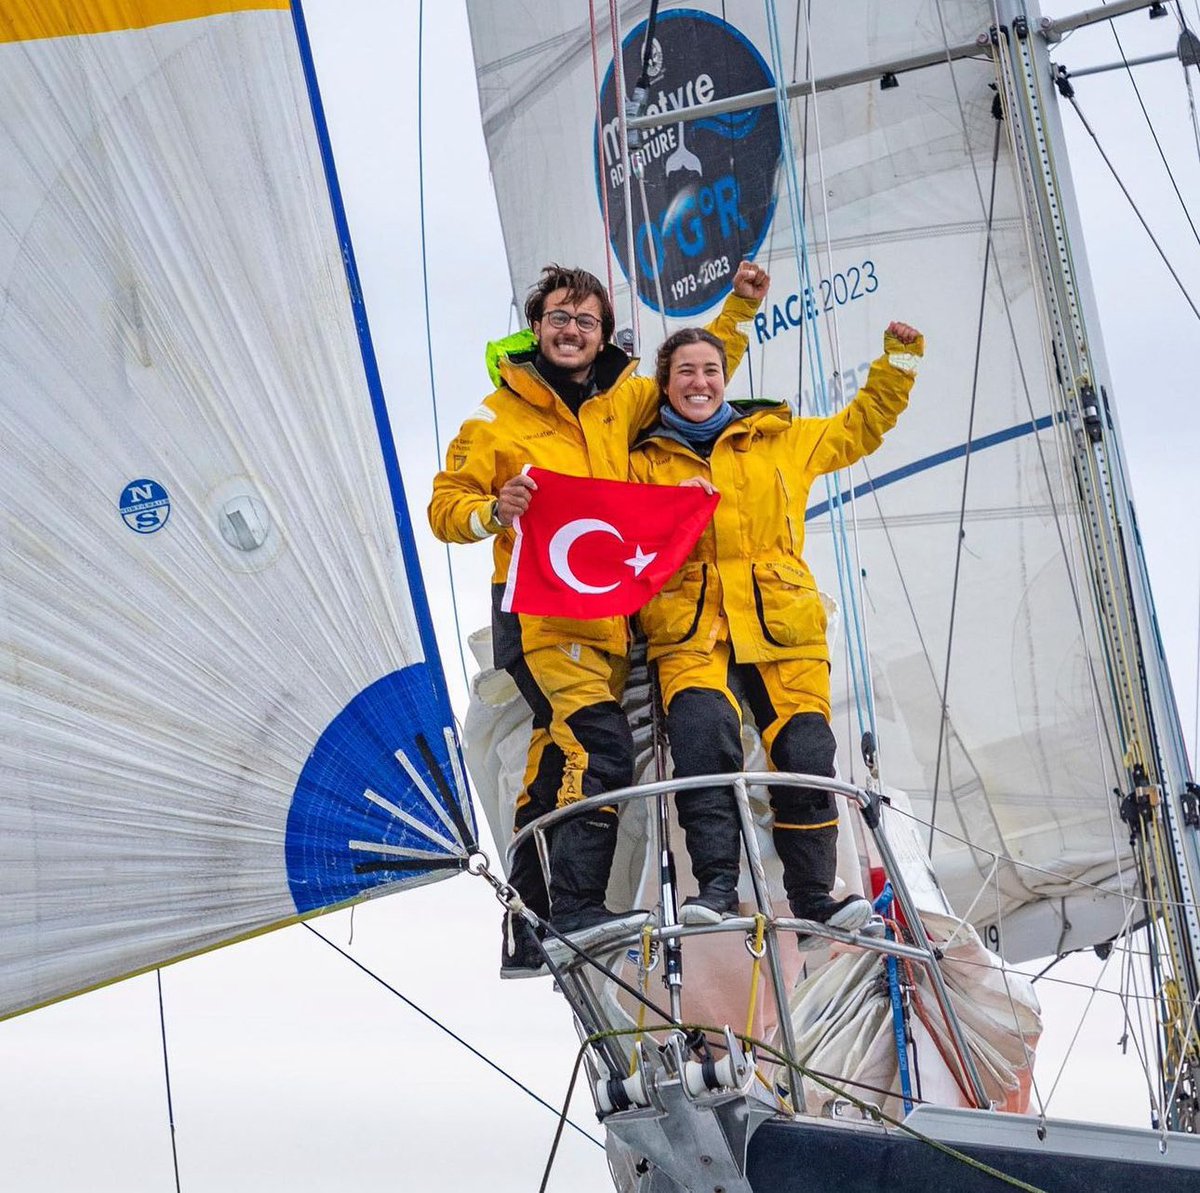 Tanıştırayım, Ezgim Mıstıkoğlu ve Derin Deniz Bınaroğlu  @Translated_9 yelkenlisi ile @oceangloberace’da yarışan iki Türk genci! 
OGR, dünyanın en zorlu ve prestijli 8 ay süren yelkenli yarışlarlarıdır. 

Tebrikler👏⚓️🧿